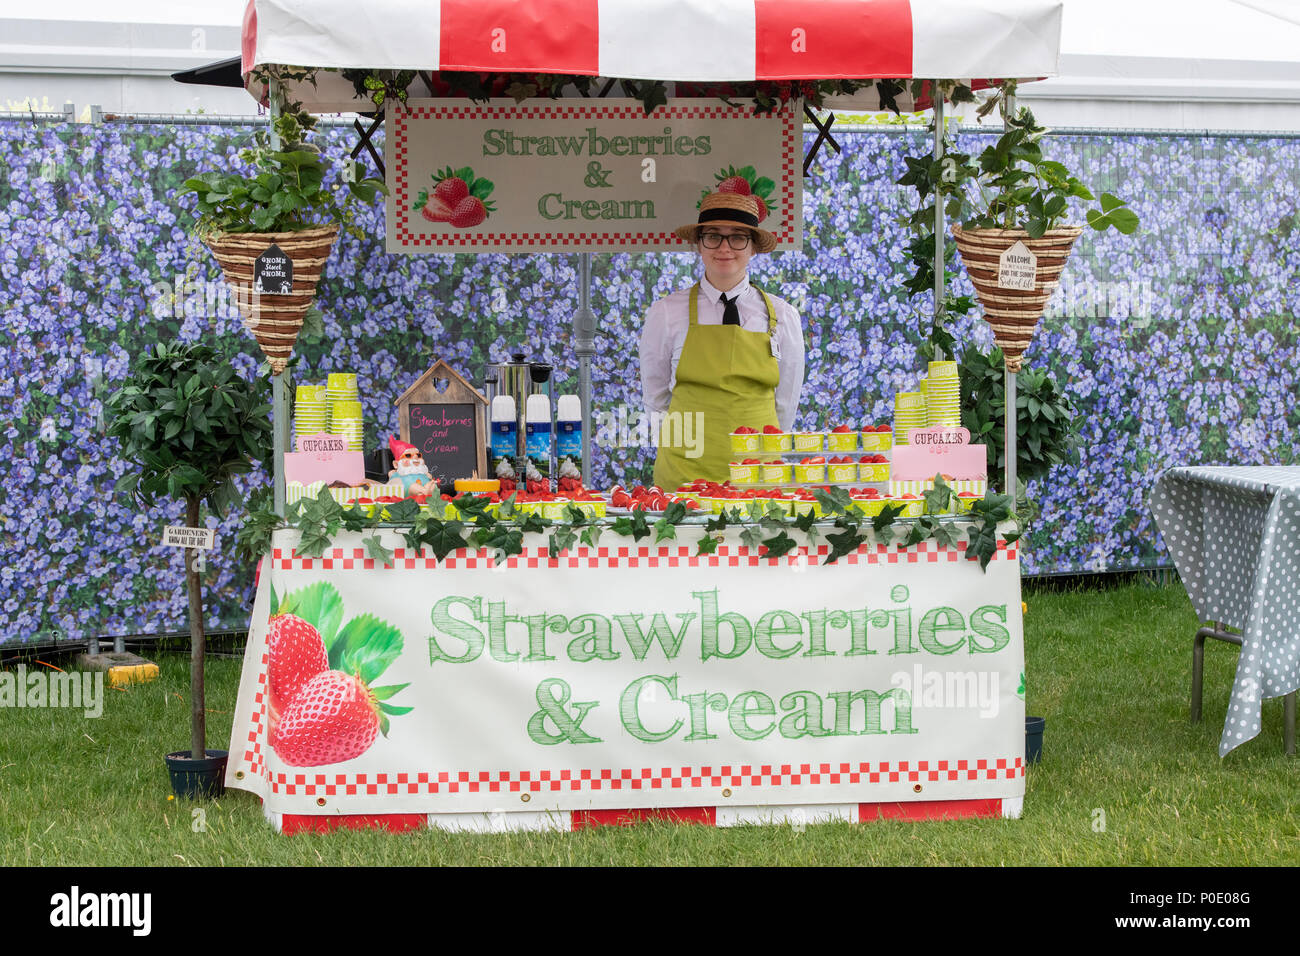 Fraises et crème food à Chatsworth RHS Flower Show 2018. Chatsworth, Bakewell, Derbyshire, Royaume-Uni Banque D'Images